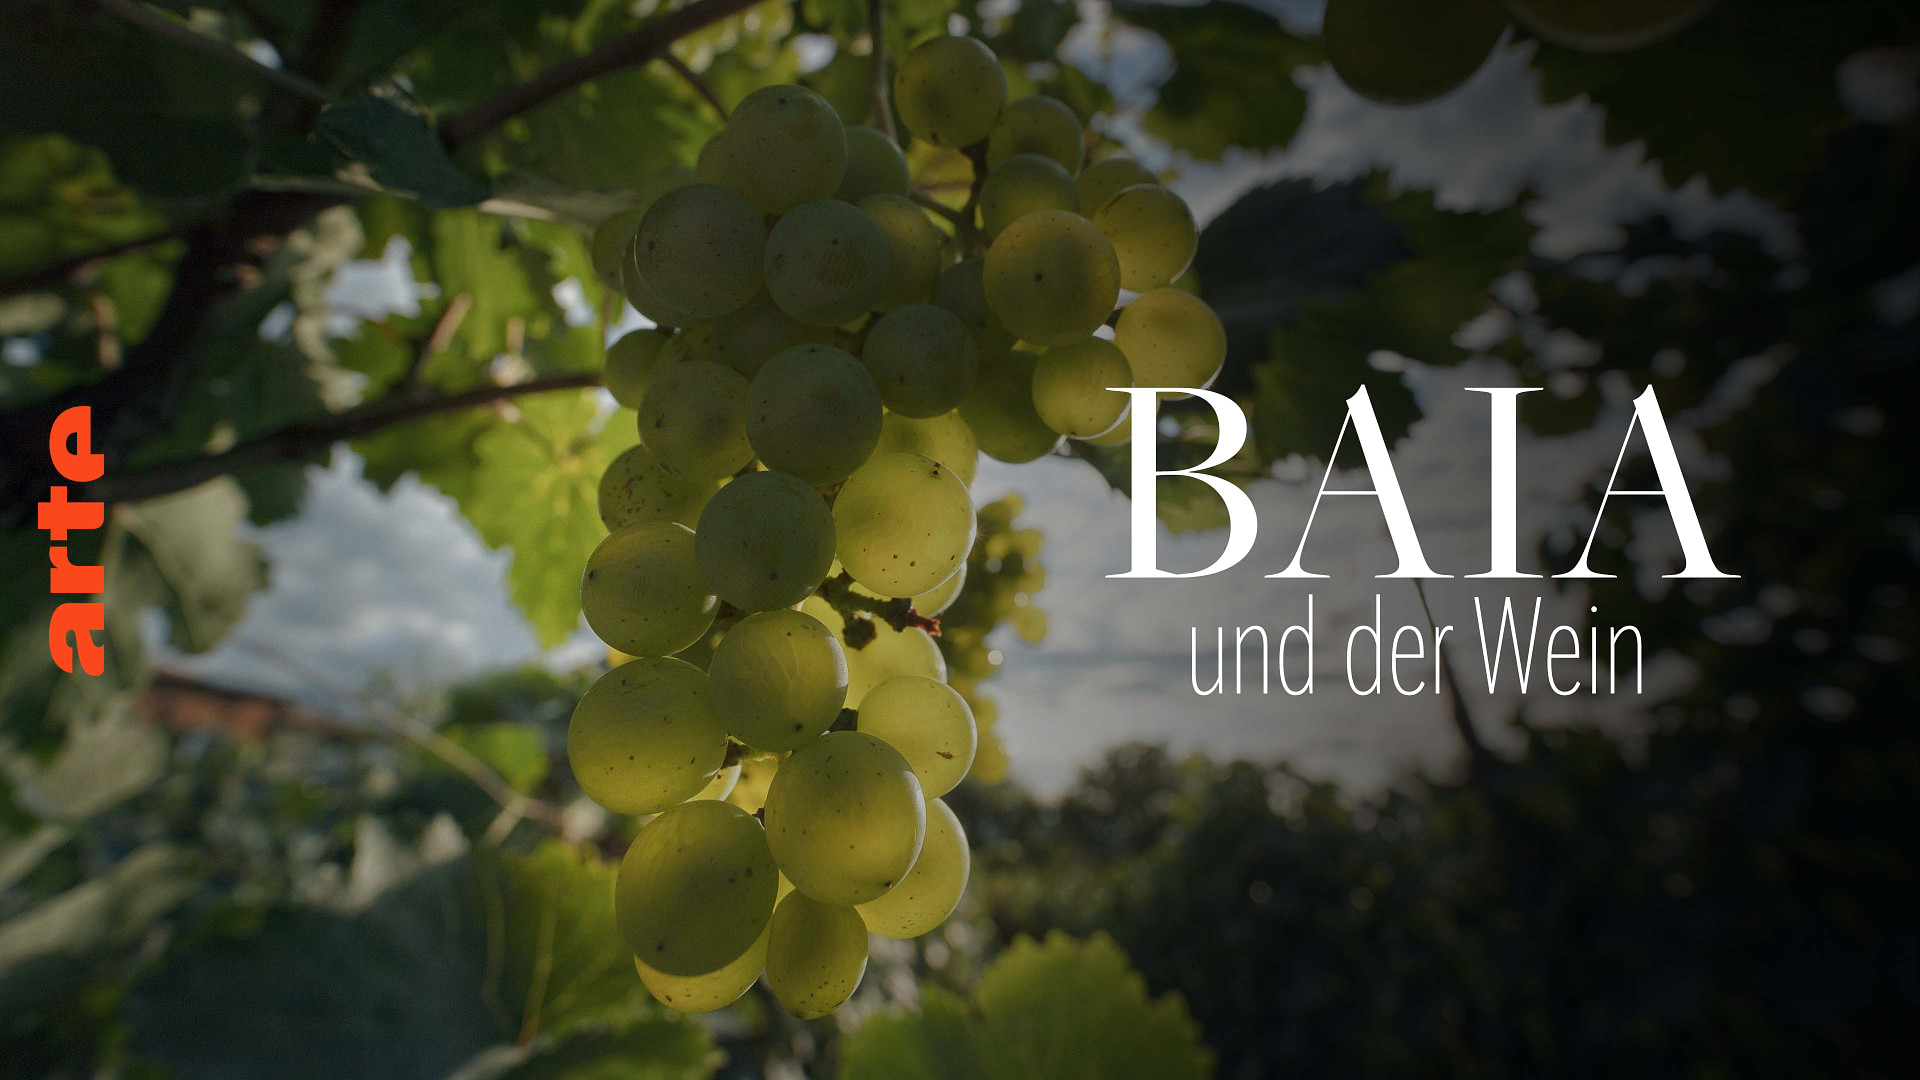 Baia und der Wein